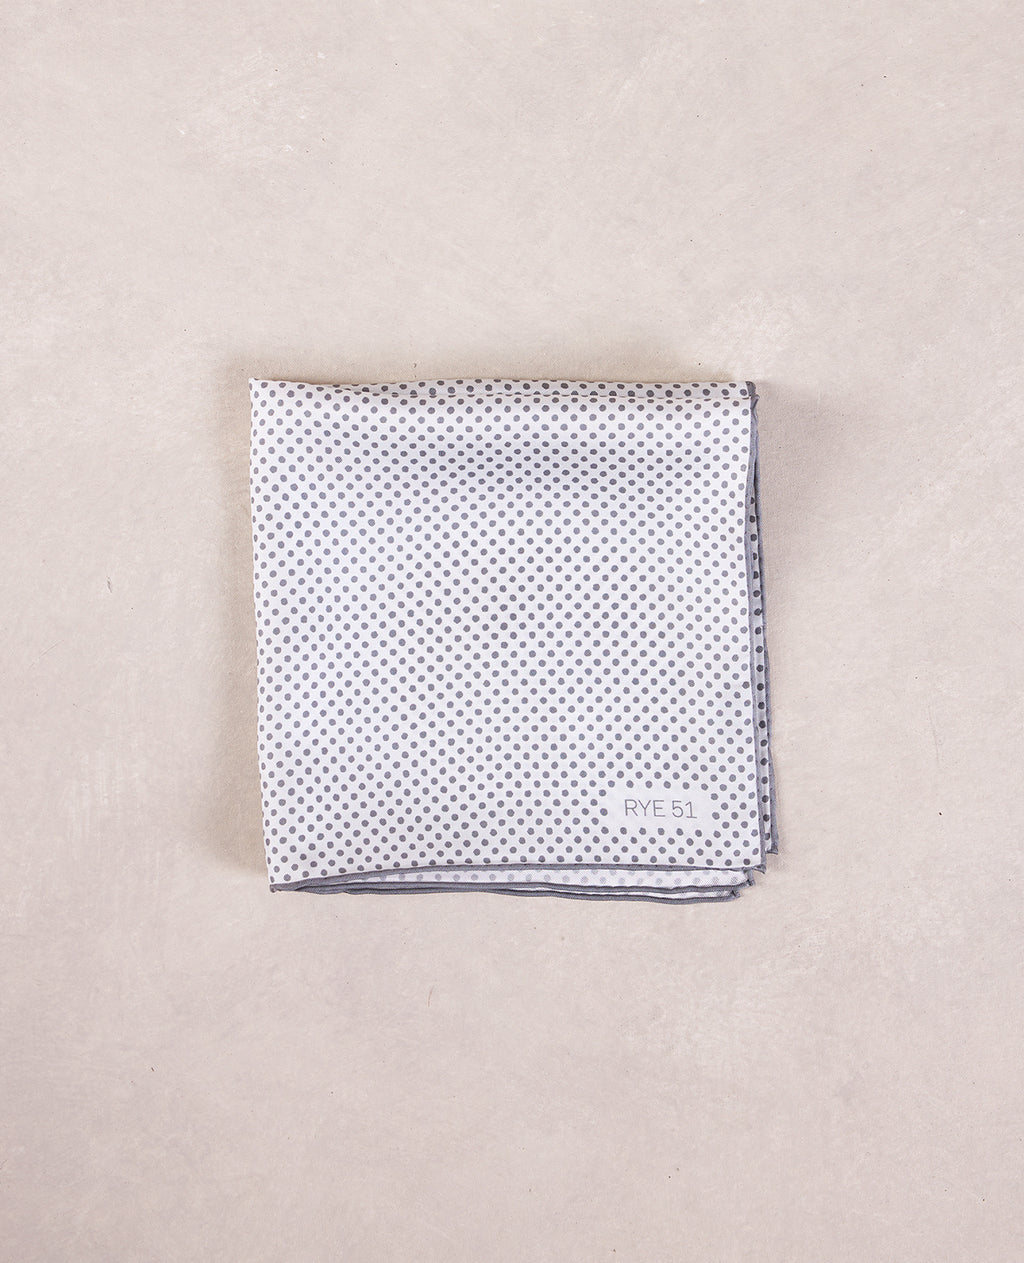 The Silk Pocket Square - 100% Silk Pocket Square - White w/ Grey Polka Dot